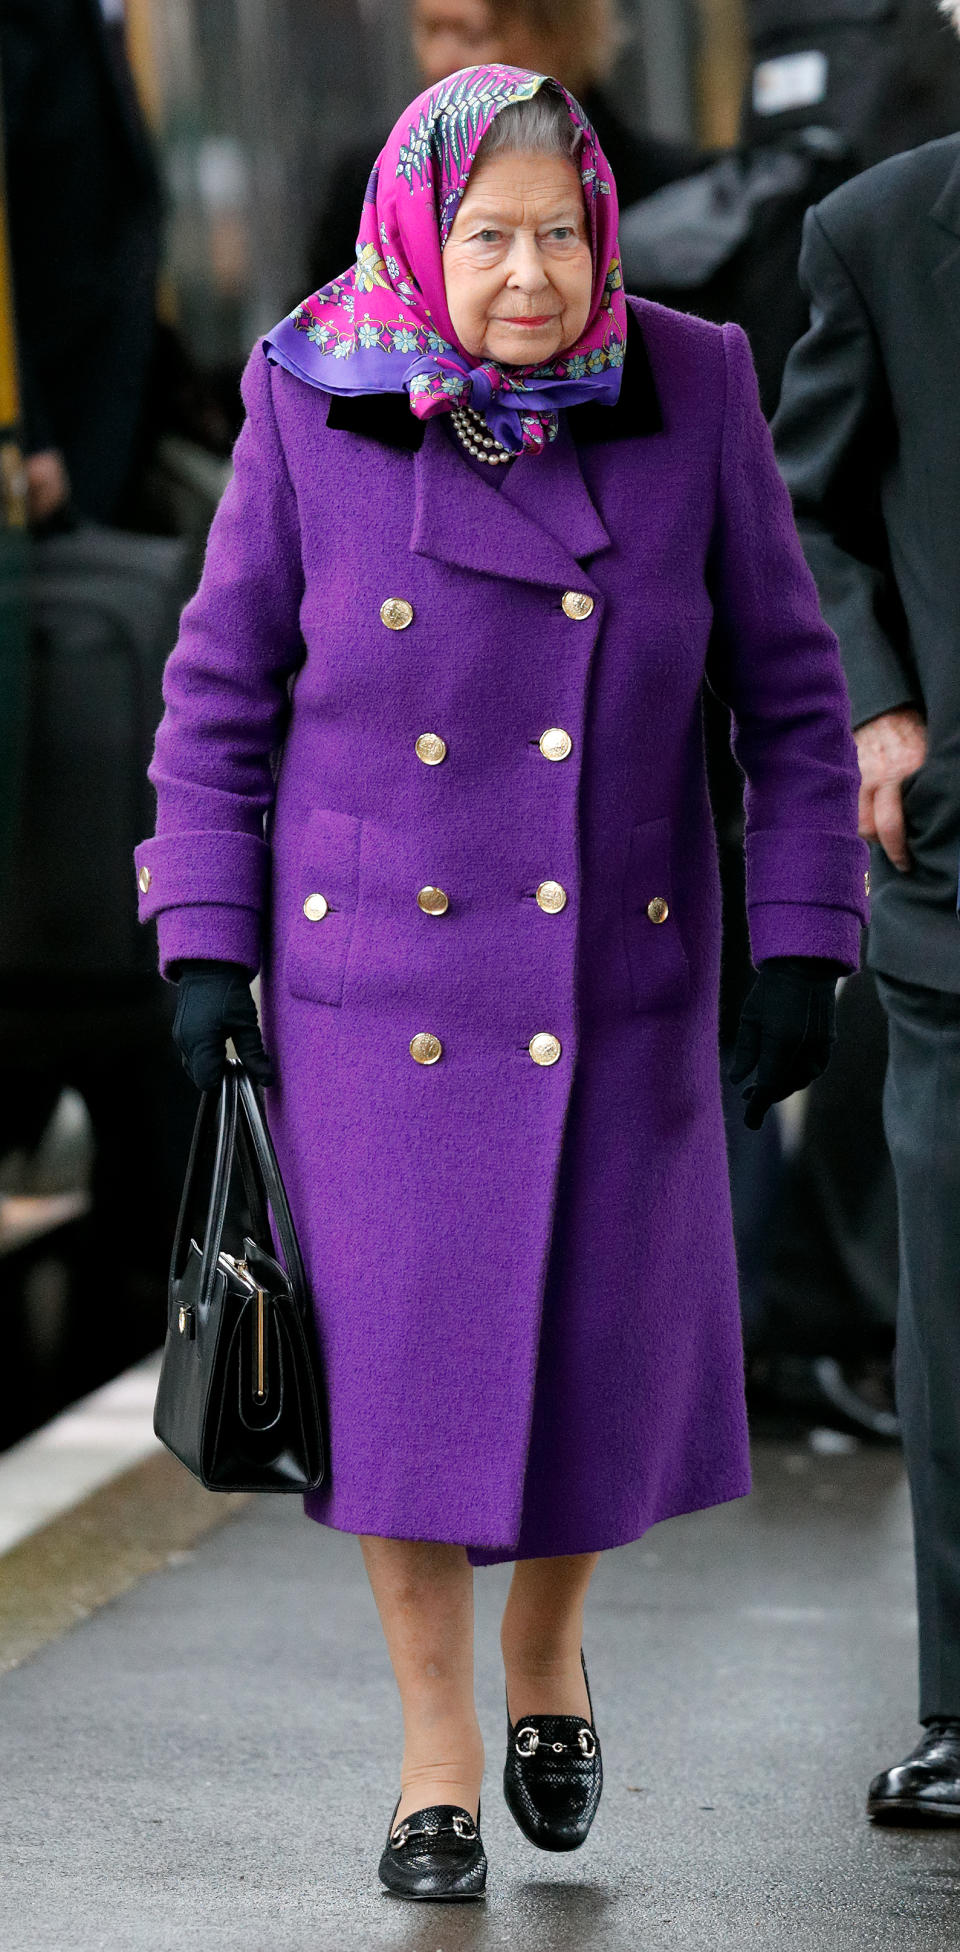 <p>La reina Isabel, quien en febrero próximo cumplirá 92 años, fue captada en la estación de trenes de King’s Lynn, con un look muy elegante, por cuenta de esta fina gabardina en color violeta/Getty Images </p>